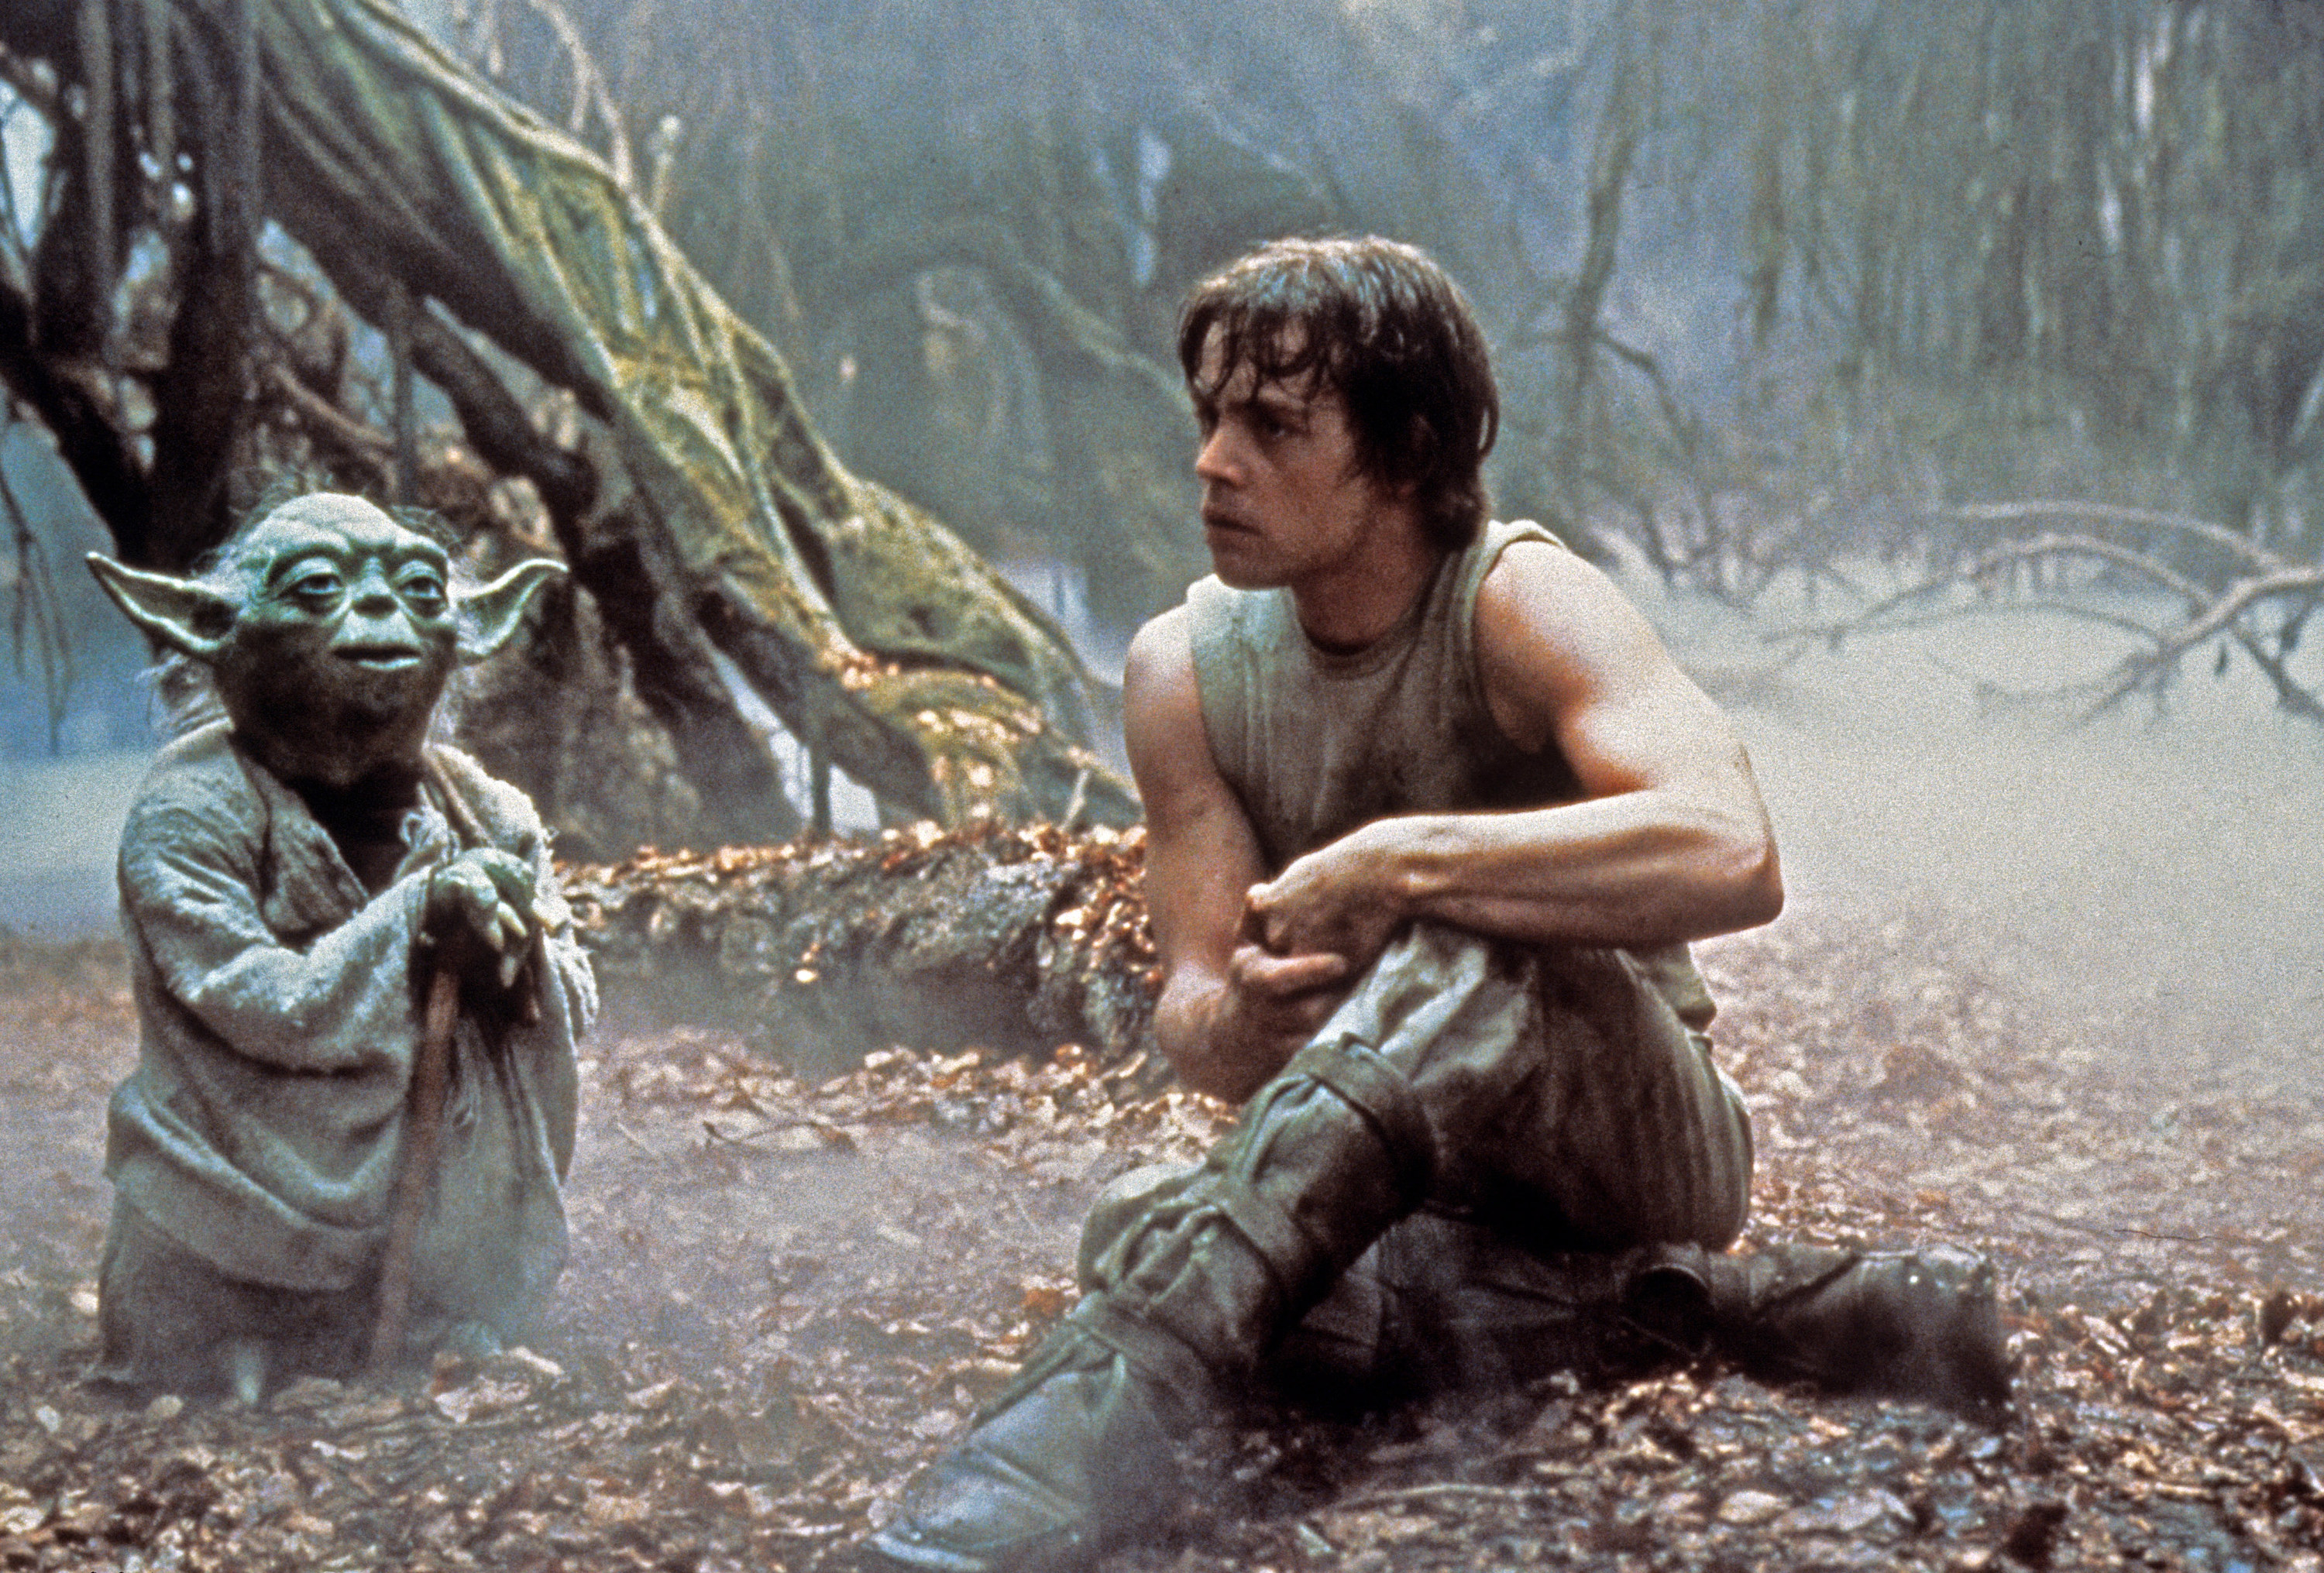 Yoda talks to Mark Hamill